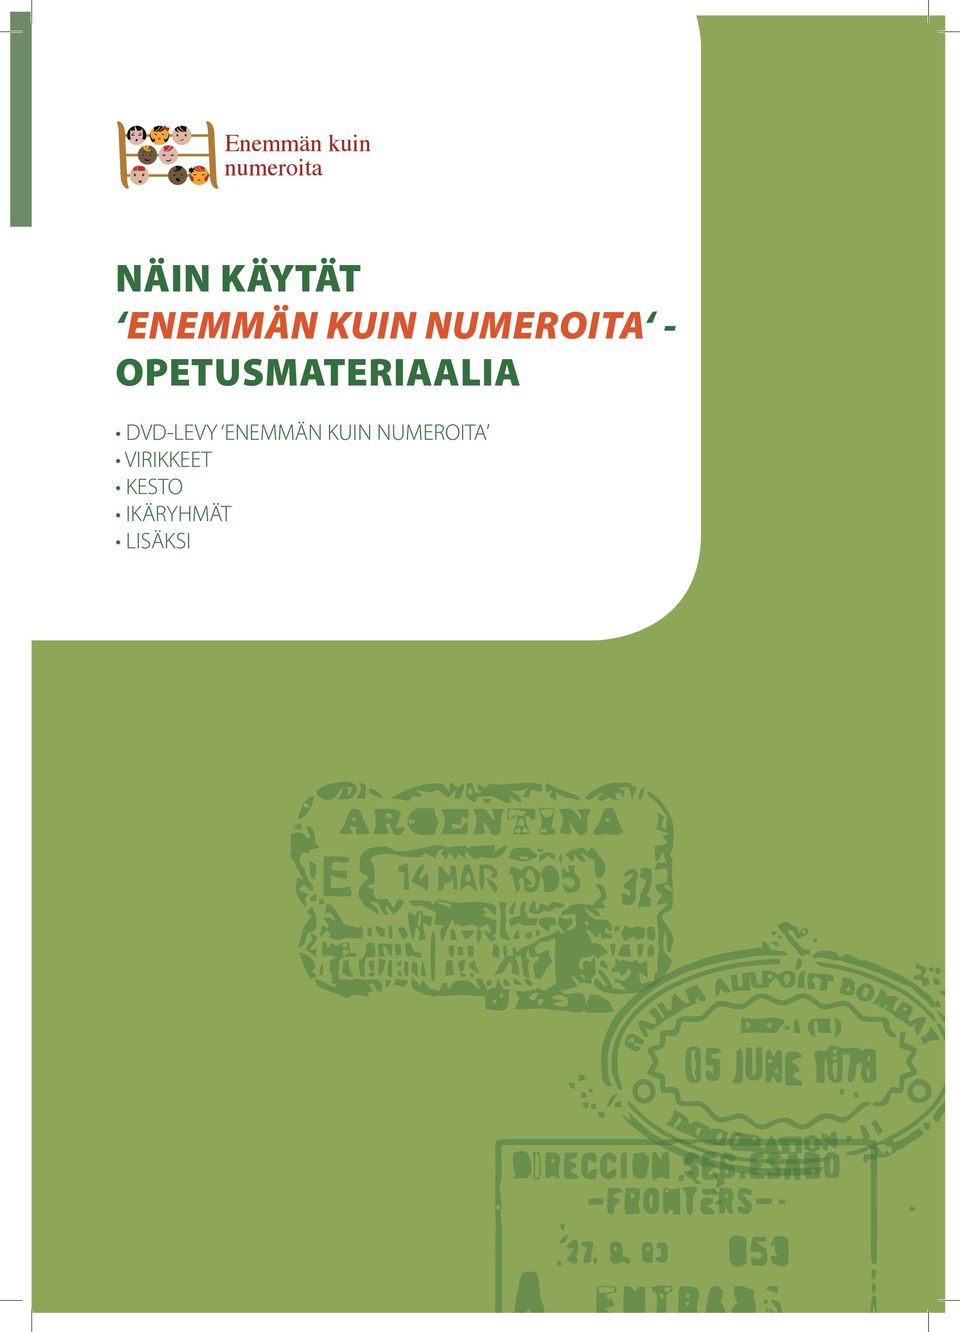 OPETUSMATERIAALIA DVD-LEVY ENEMMÄN